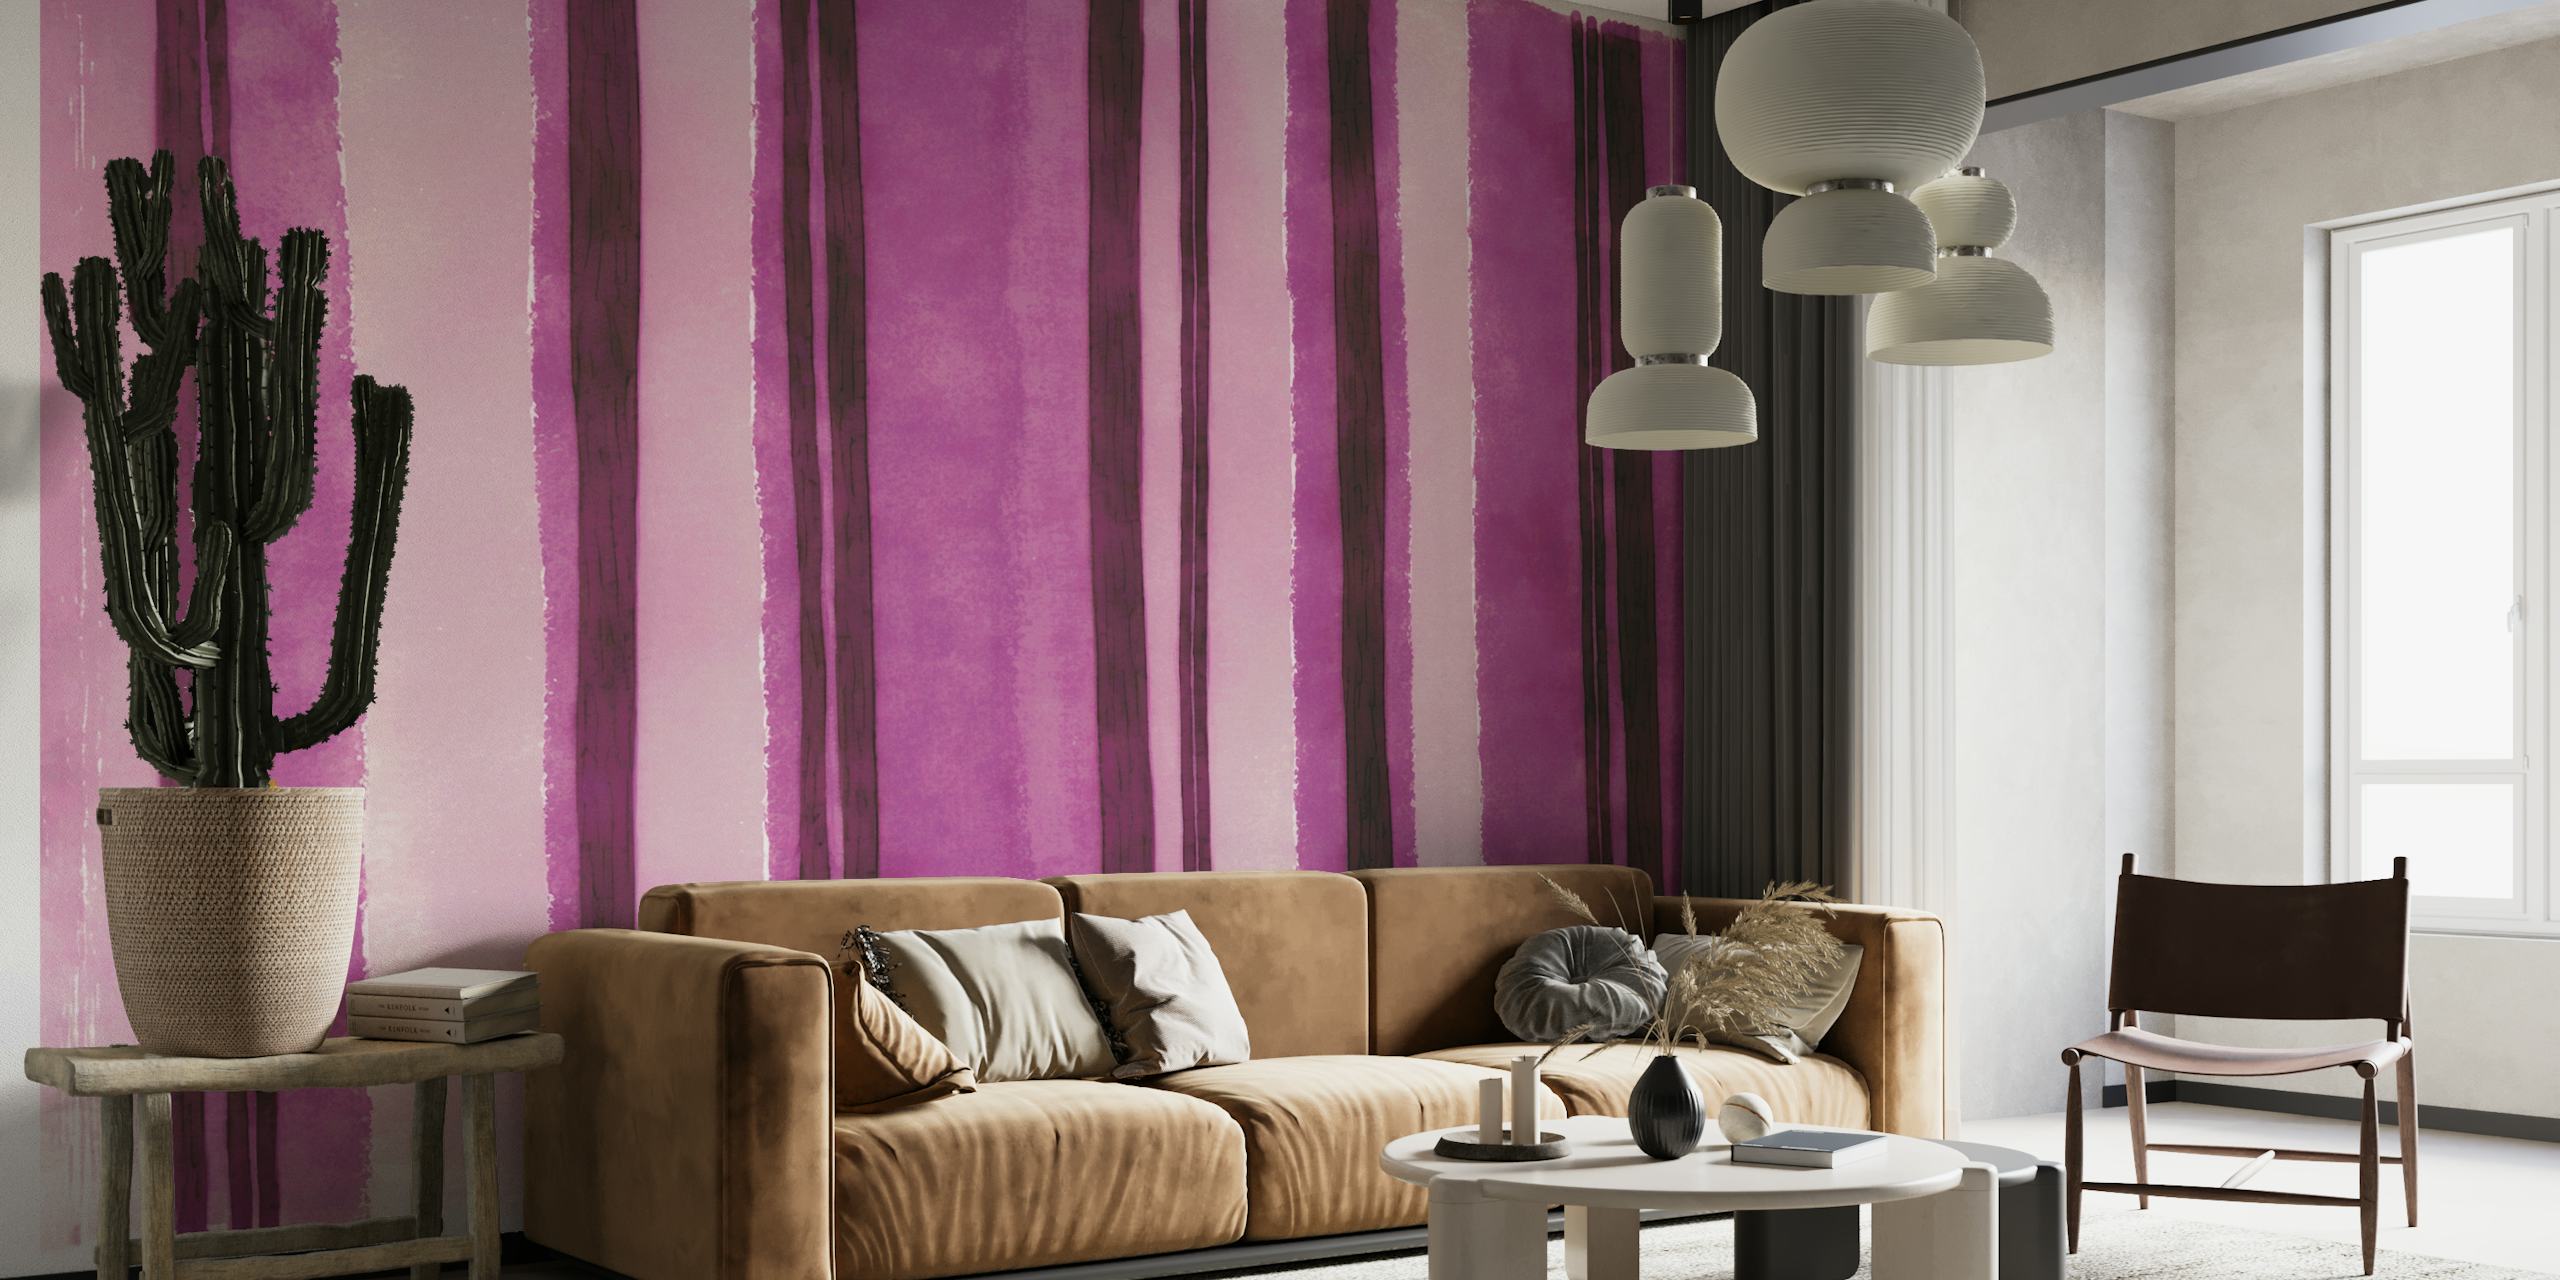 Fotomural vinílico de parede com listras aquarela rosa fúcsia com texturas de aquarela ousadas e suaves